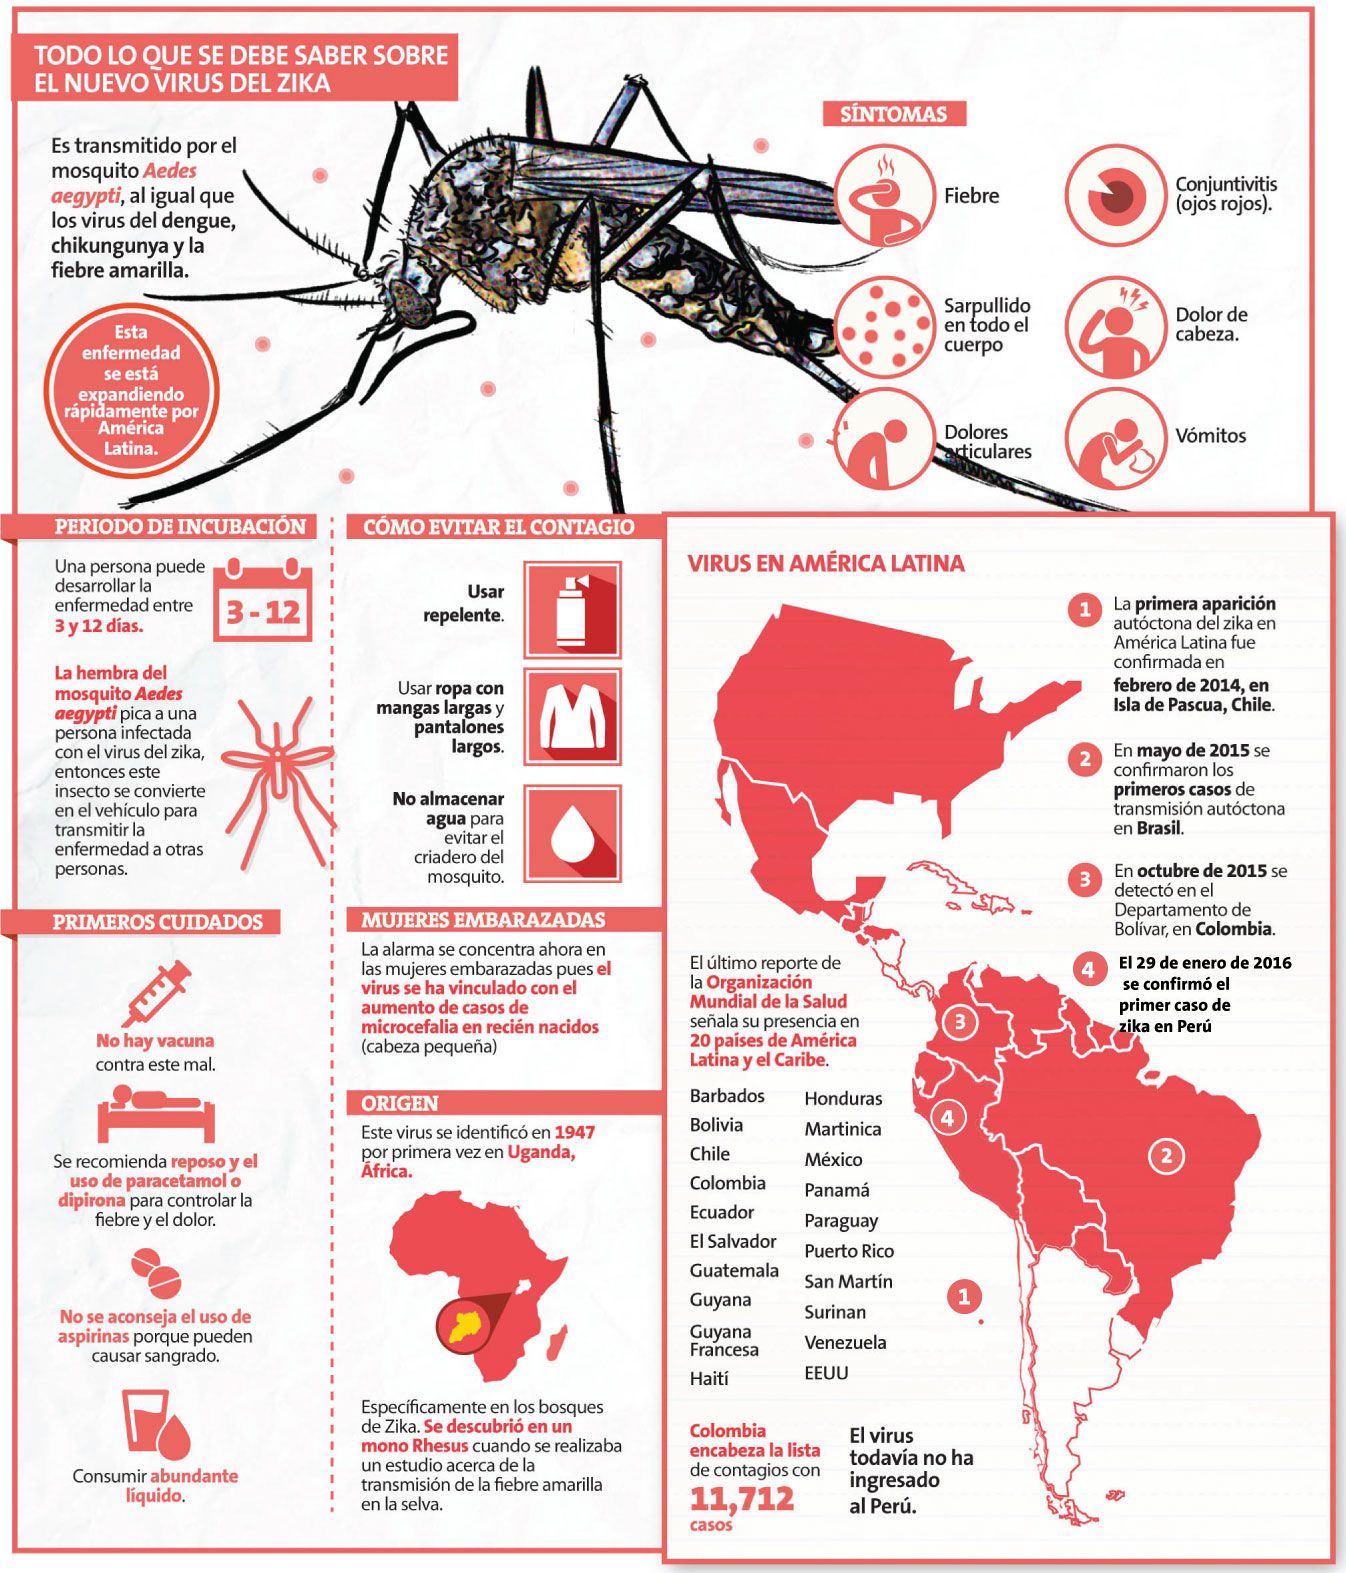 ¡Alerta! ¡Virus del Zika llegó a Perú!